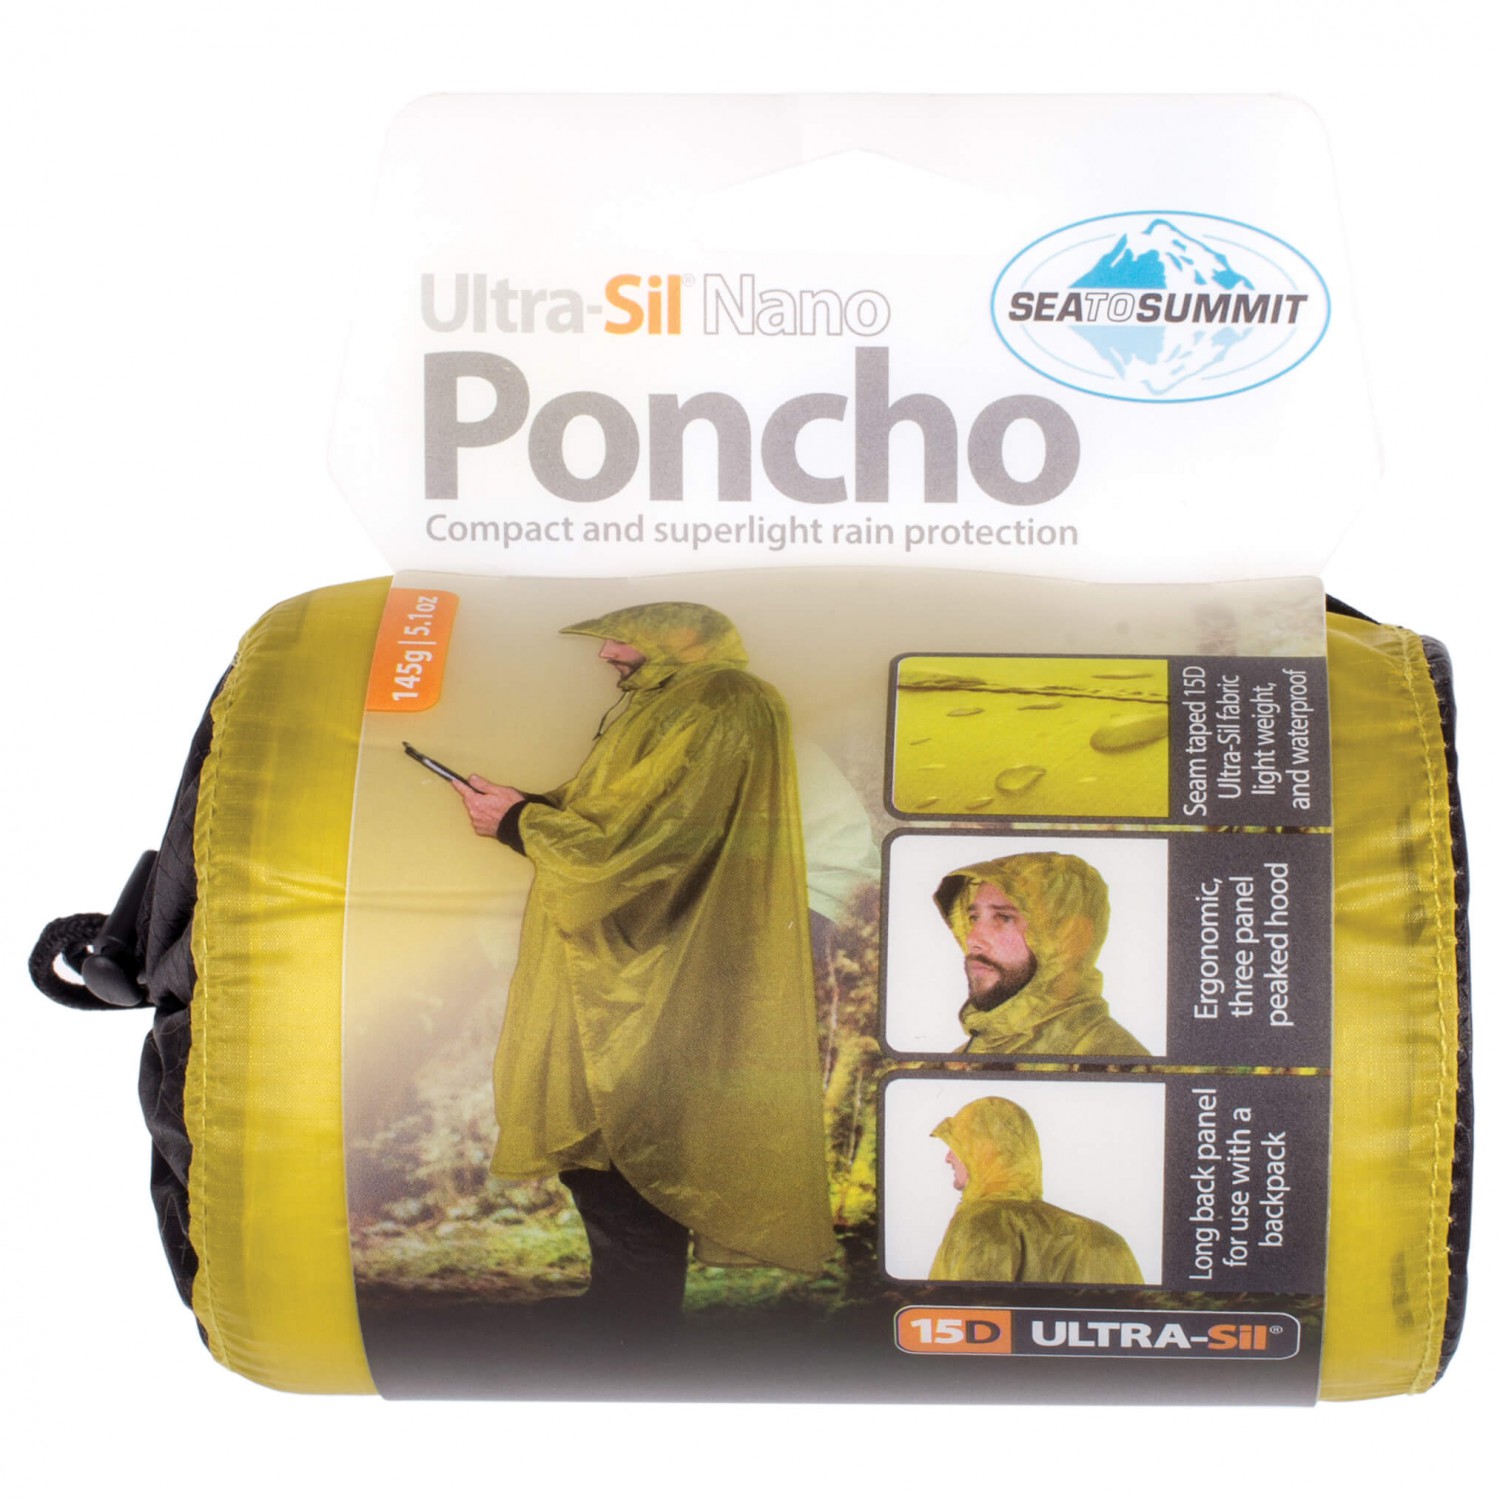 Дождевик Sea To Summit Poncho 15D, цвет Lime sea to summit гермомешок с окном ultra sil view dry sack 8л